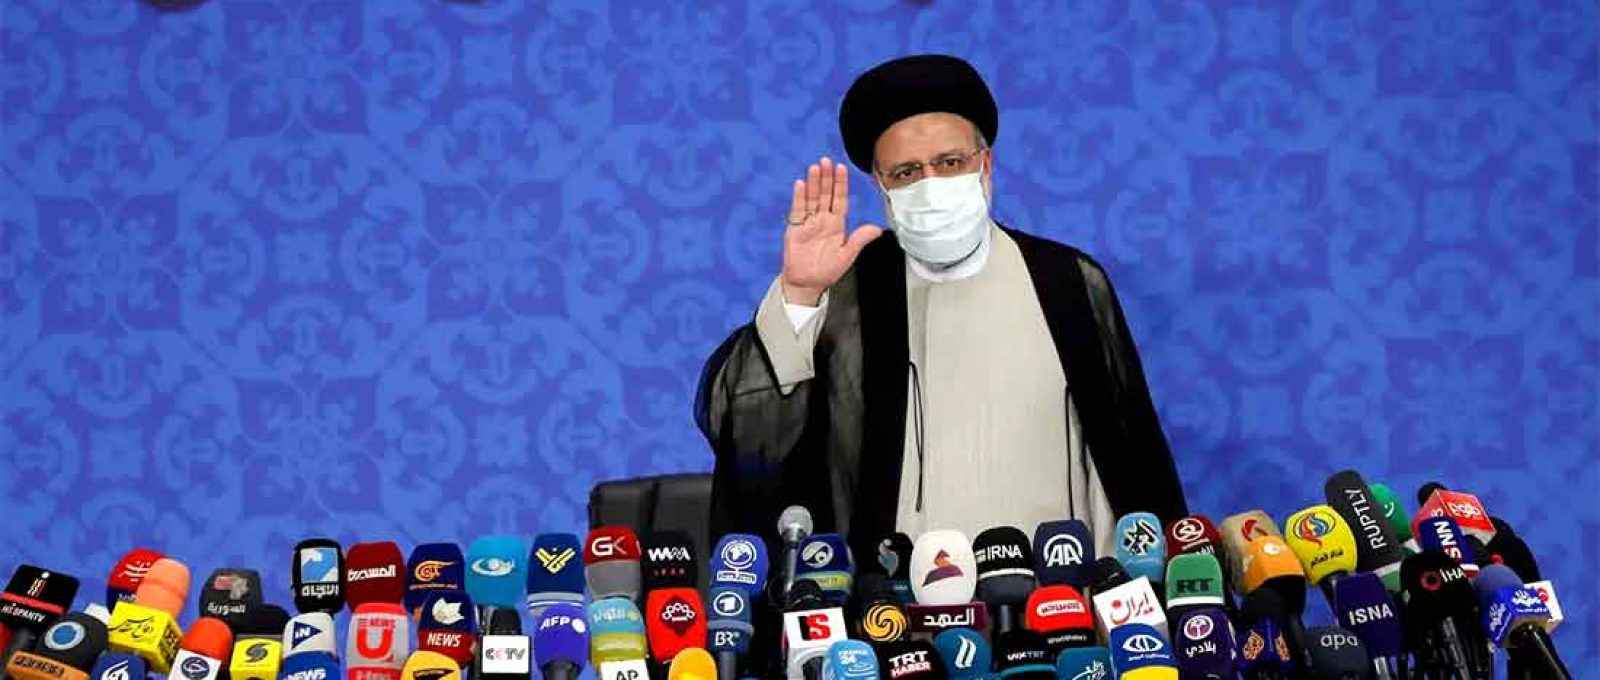 O presidente eleito do Irã, Ebrahim Raisi, fala em Teerã (Foto: WANA/Reuters).